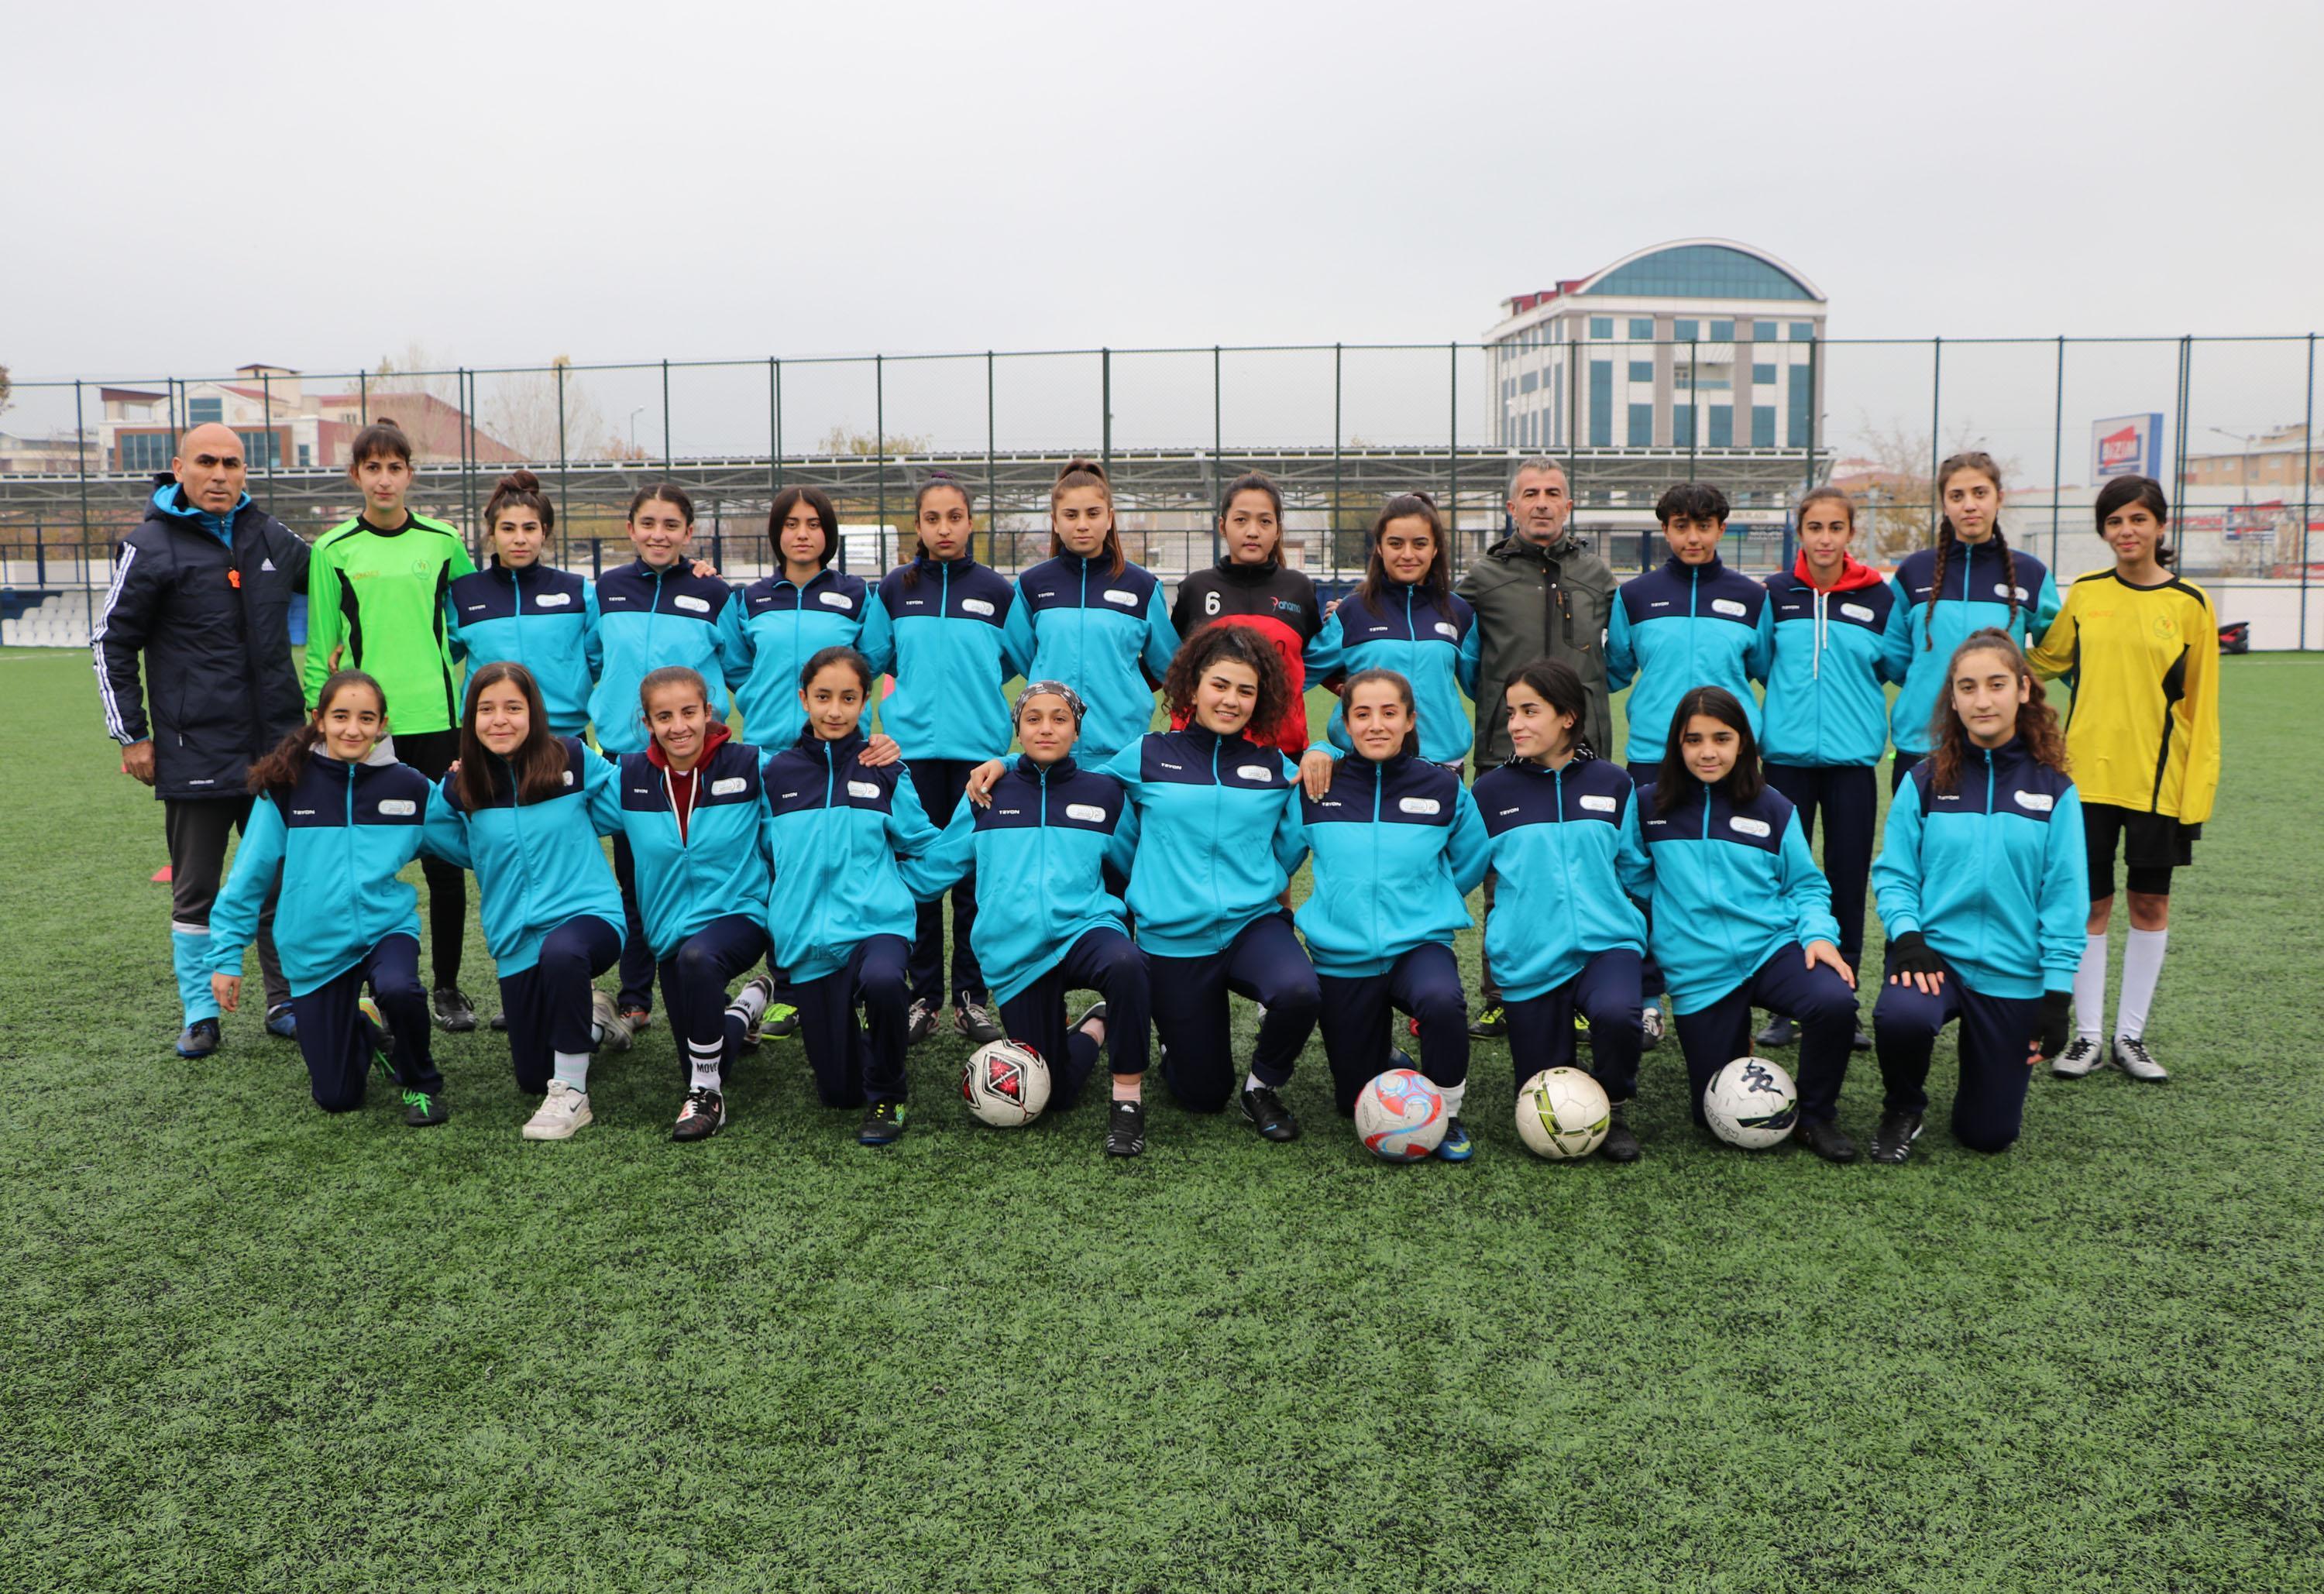 Vangücü Kadın Futbol Takımı, Afganistanlı antrenöre emanet